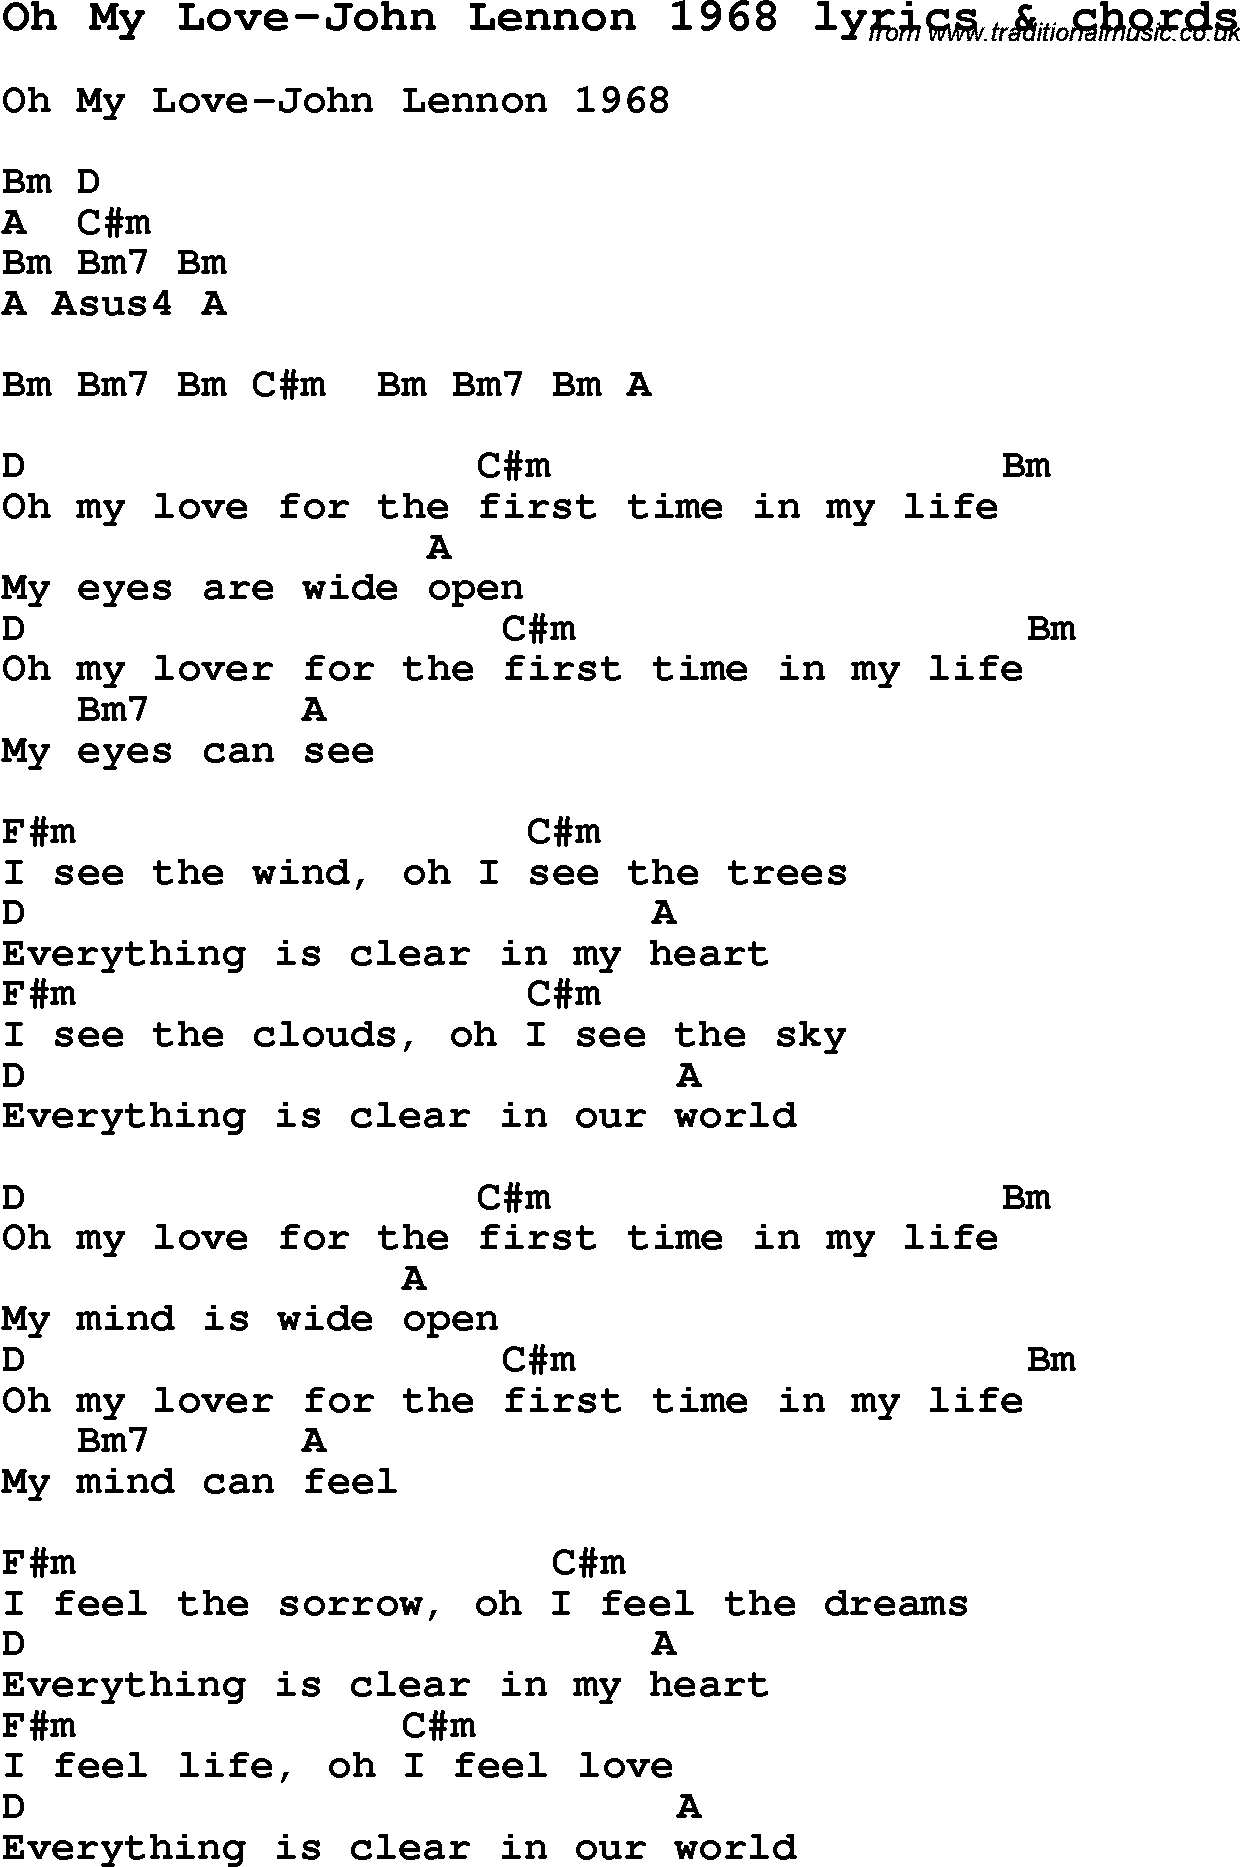 Love Song Lyrics for: Oh My Love-John Lennon 1968 with chords for Ukulele, Guitar Banjo etc.